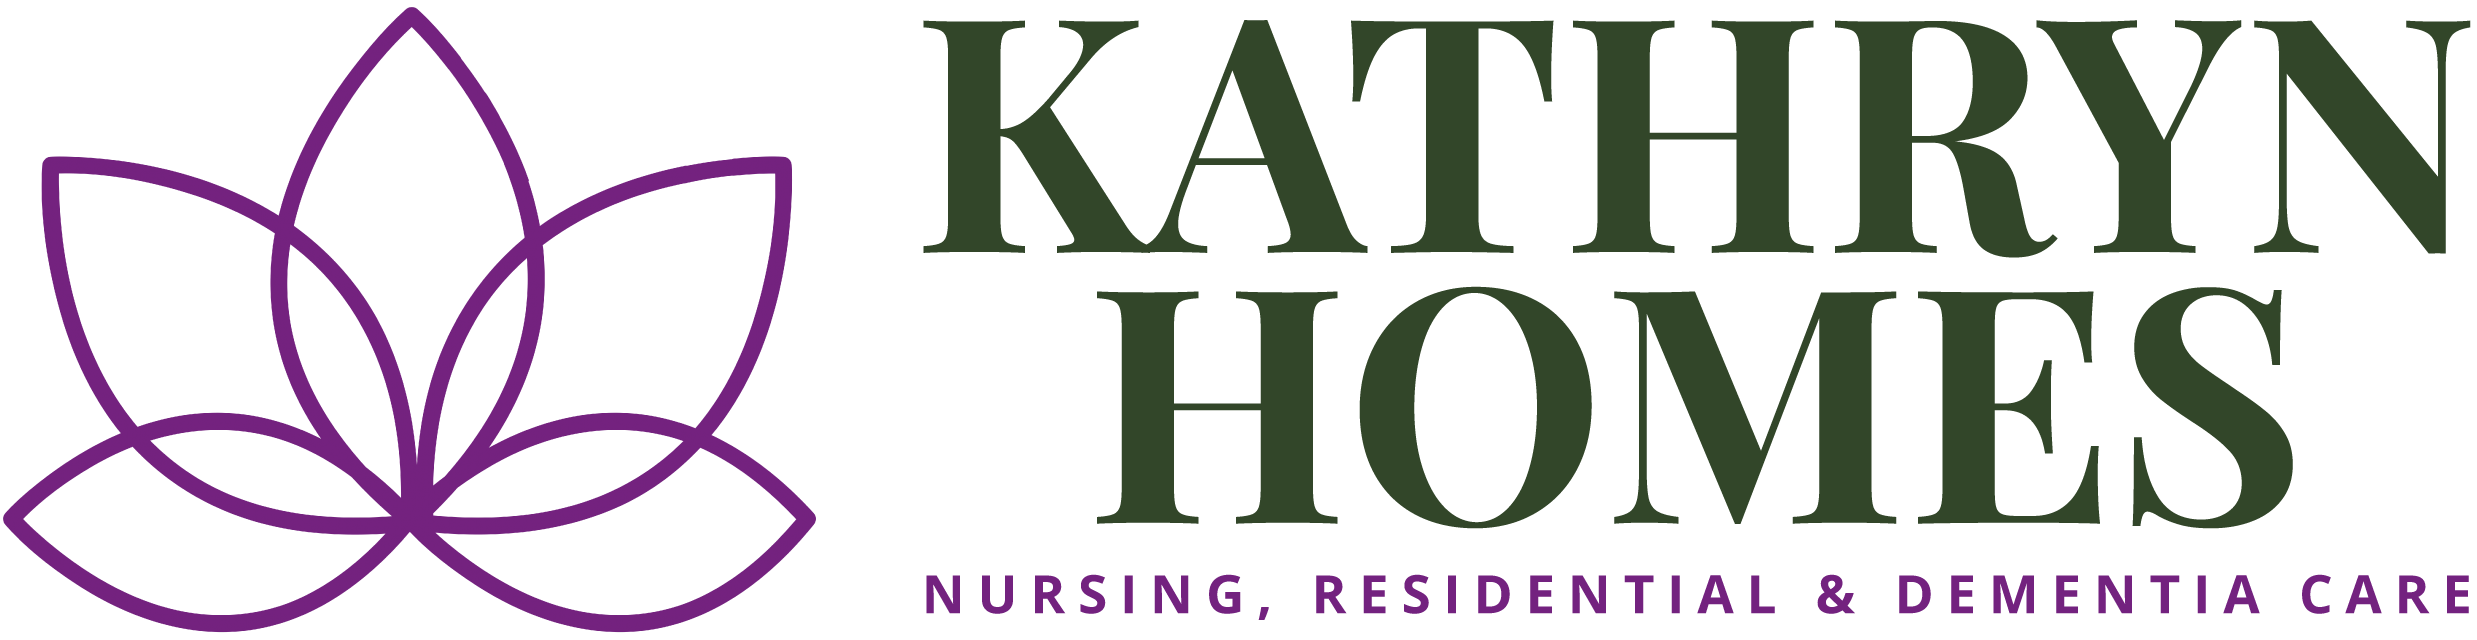 Kathryn Homes Careers